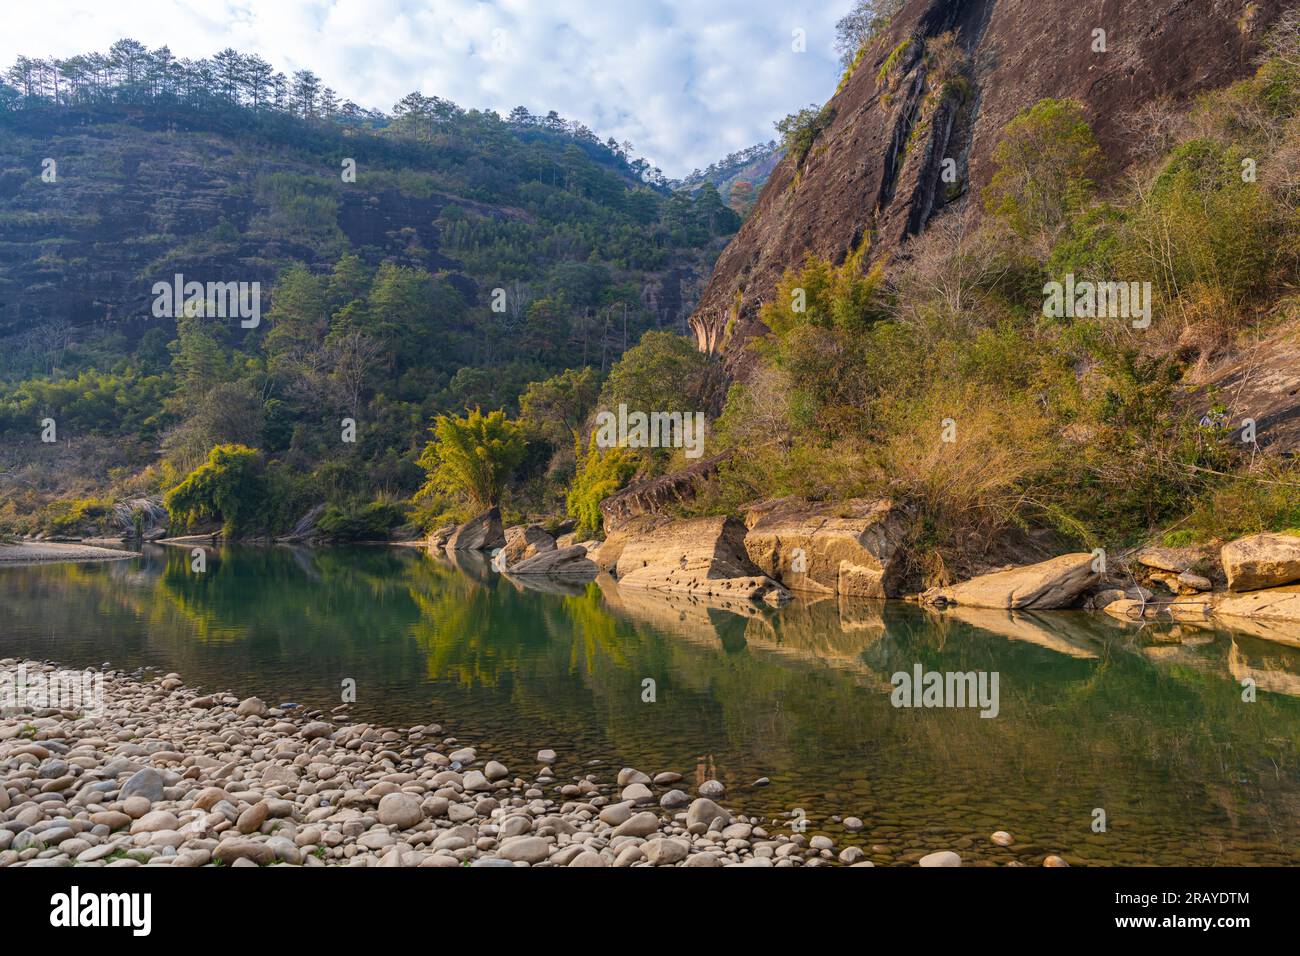 Un boschetto di alberi di bambù e insolite formazioni rocciose sul fiume Nine Tend a wuyishan in cina nella provincia del fujian, spazio copia per testo, orizzontale Foto Stock